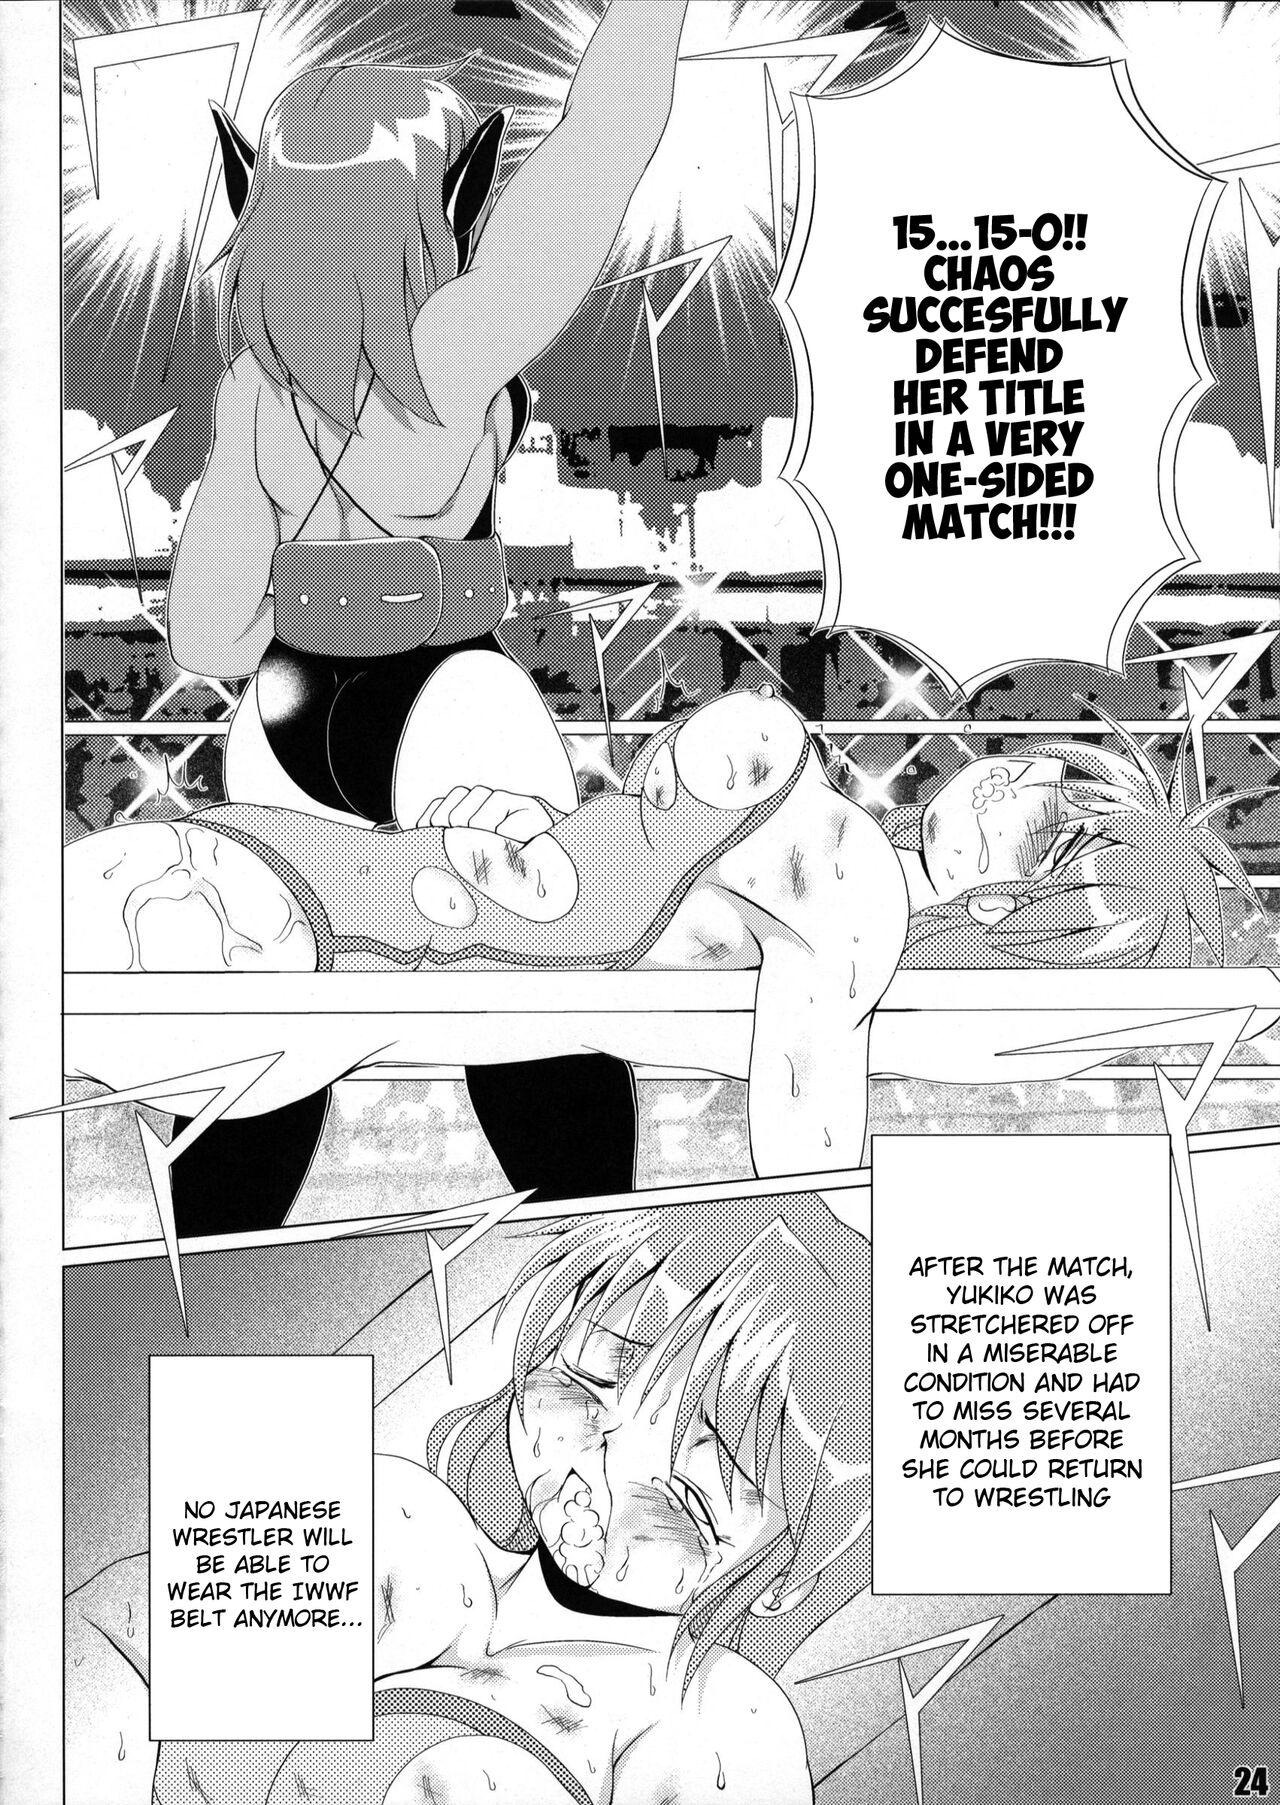 Soapy Massage (COMIC1☆6) [Soket=Pocket (Soket)] Mighty Yukiko vs Dark Star Chaos (FALLIN' ANGELS4 (WRESTLE ANGELS)) - Wrestle angels Girlnextdoor - Page 20